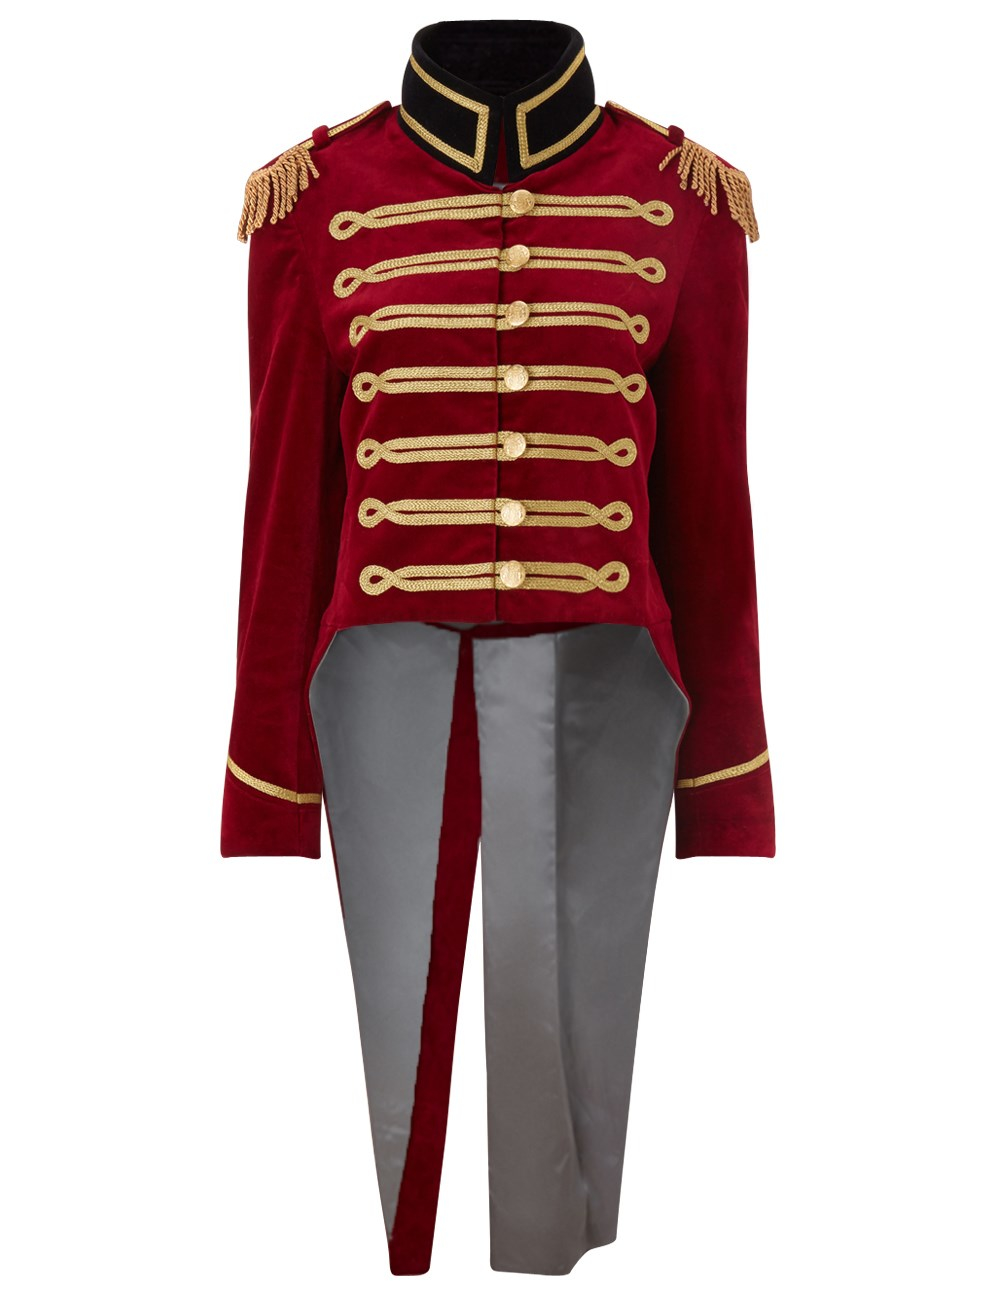 Pinky laing Burgundy Velvet Military Tailcoat Jacket in Red | Lyst